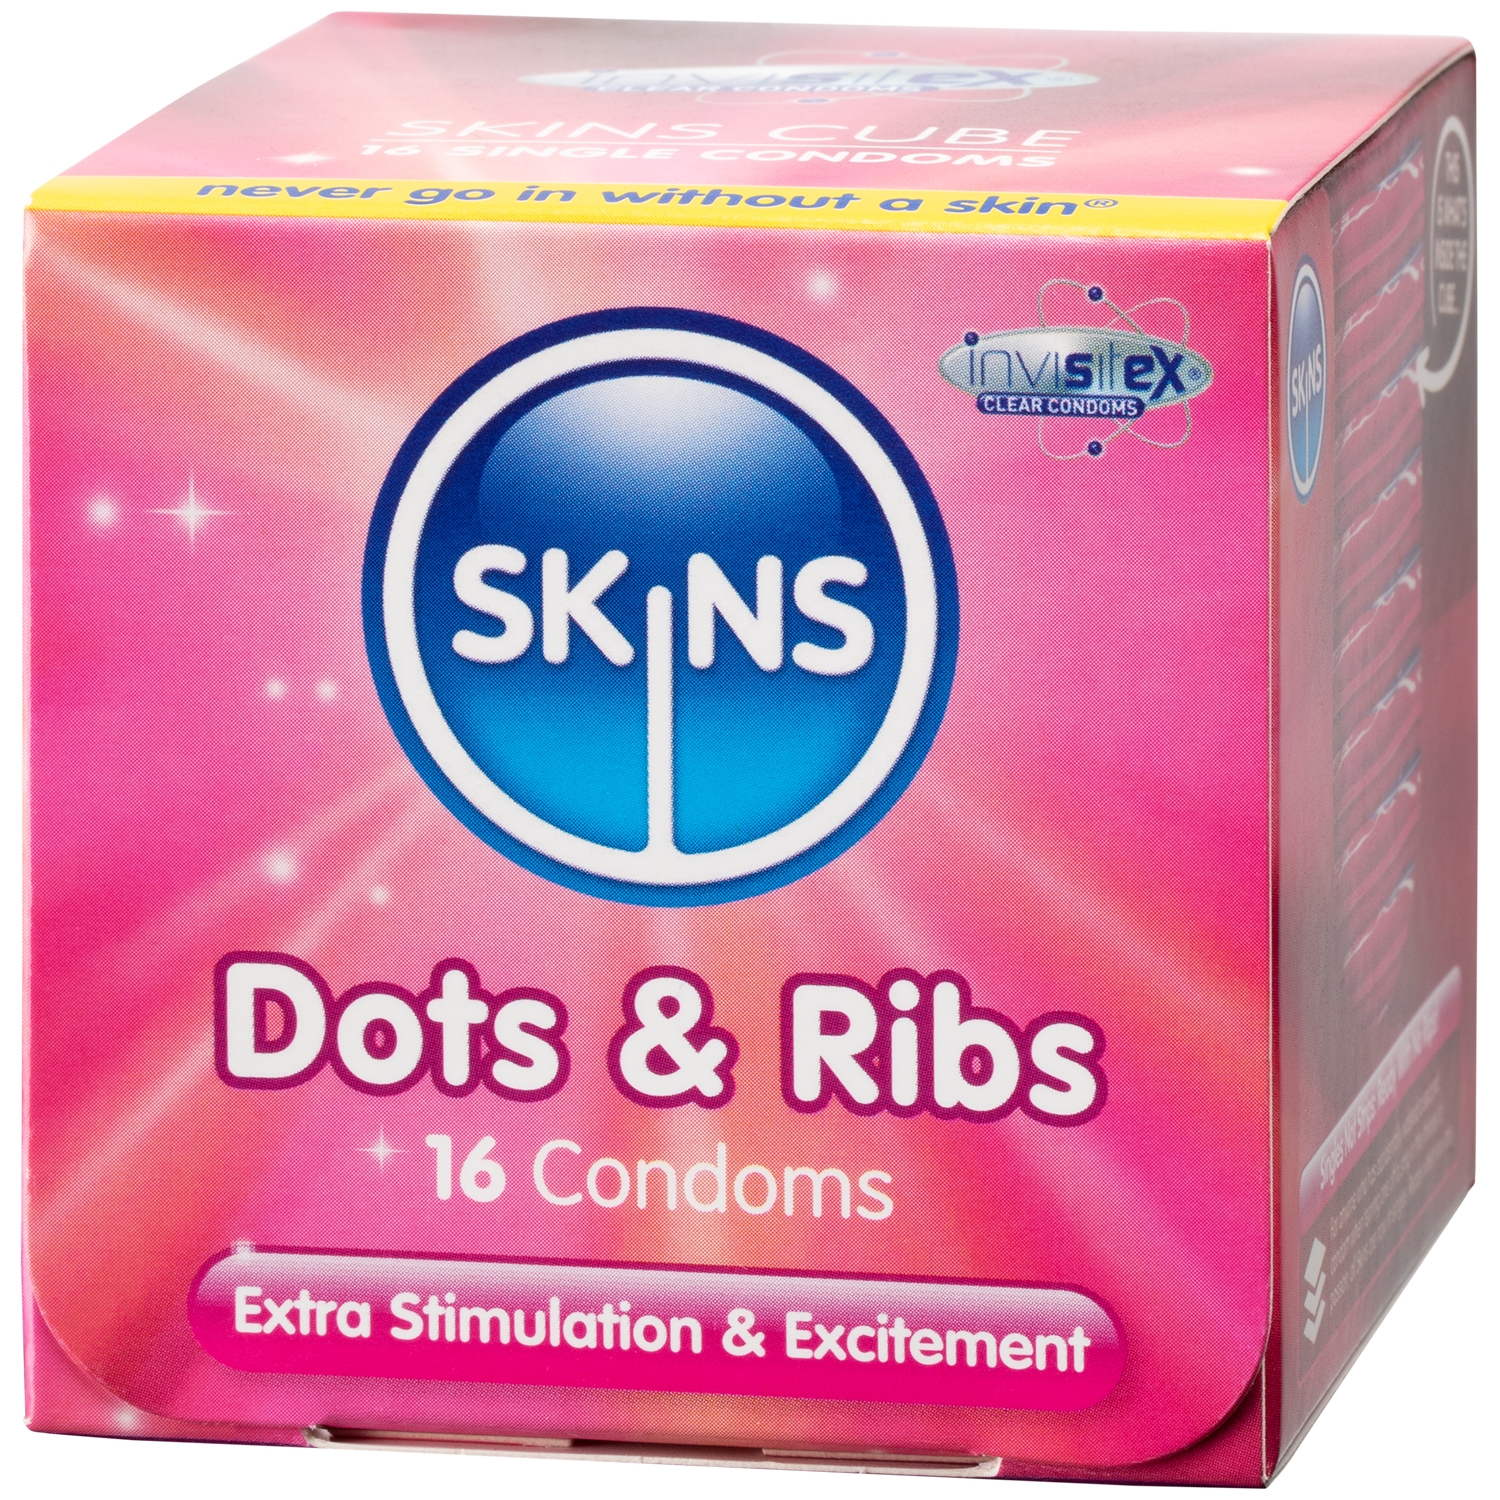 Skins Dots & Ribs Kondomer 16 st - Klar | Tillbehör//Kondomer//Män//Bättre Sex//Specialkondomer//Par kondomer//Små Kondomer//Tunna Kondomer//Skins | Intimast